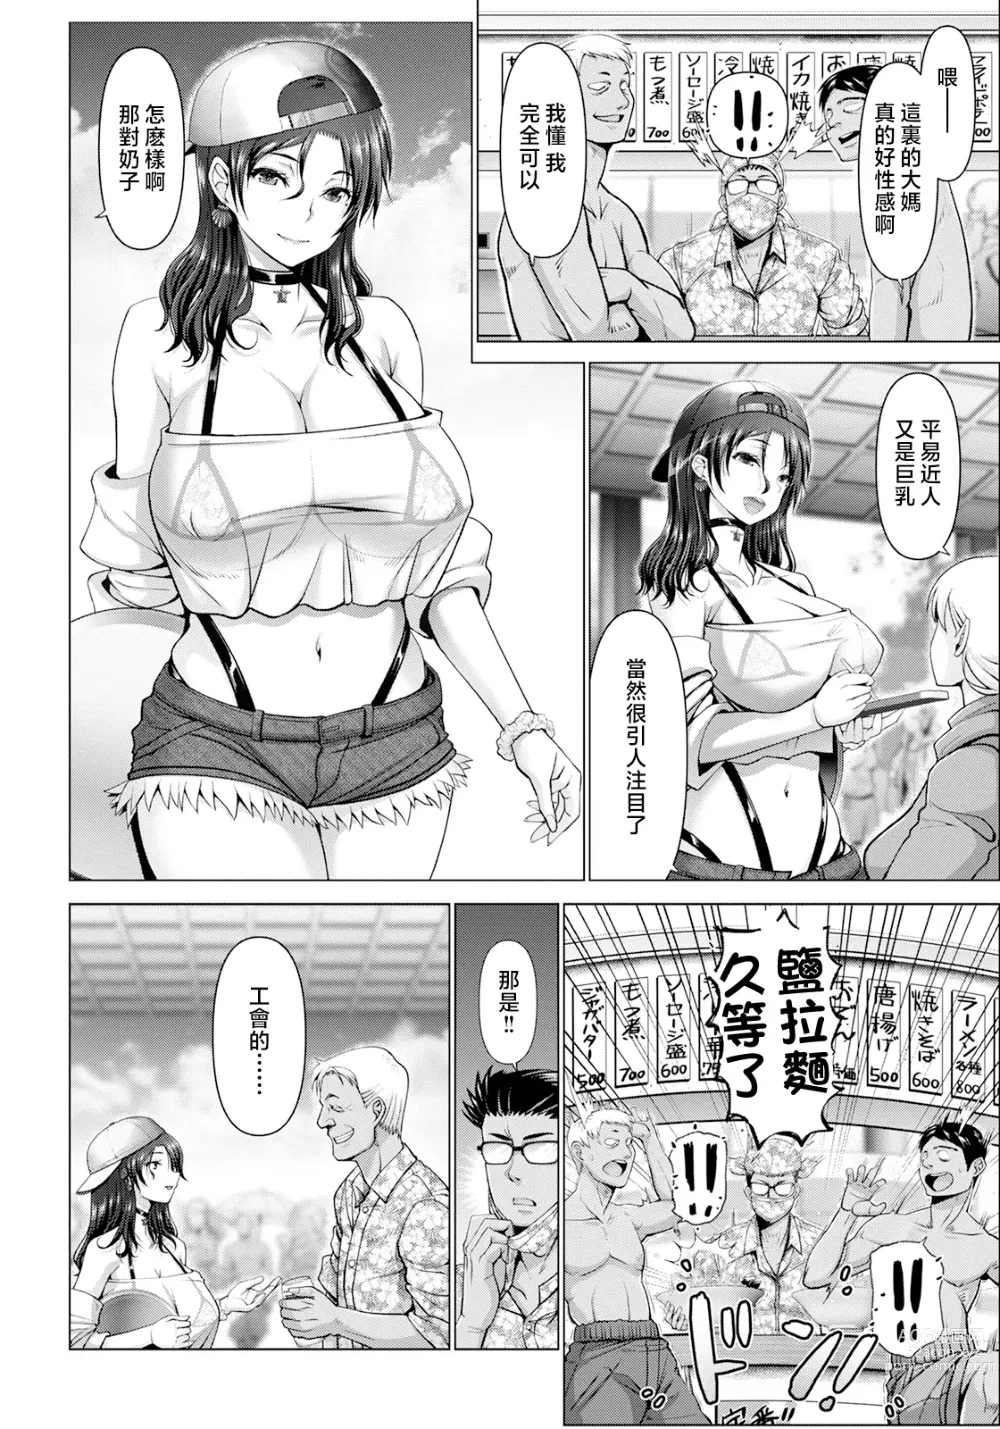 Page 2 of manga ito sino manman― umi no ie de anan―